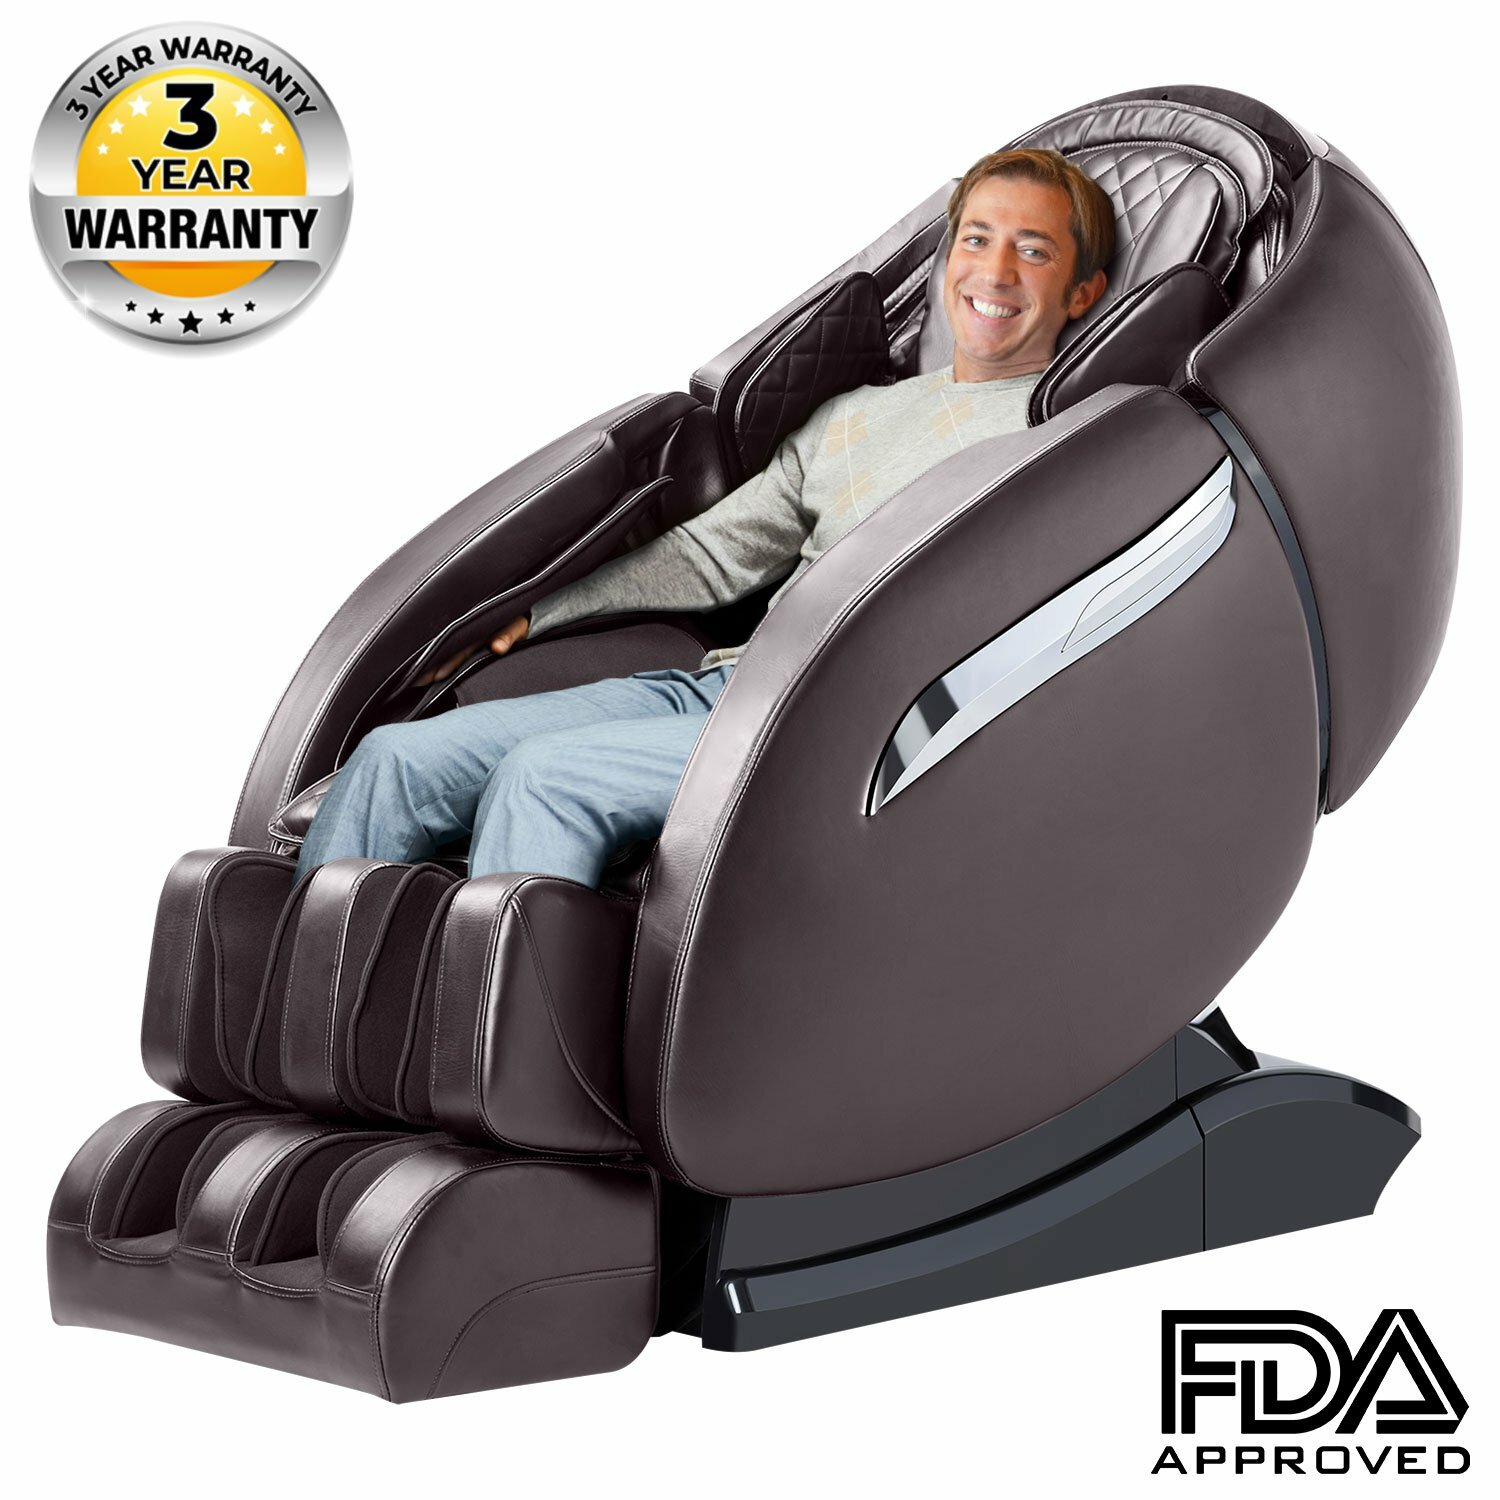 Relaxe™ Heated Massage Chair